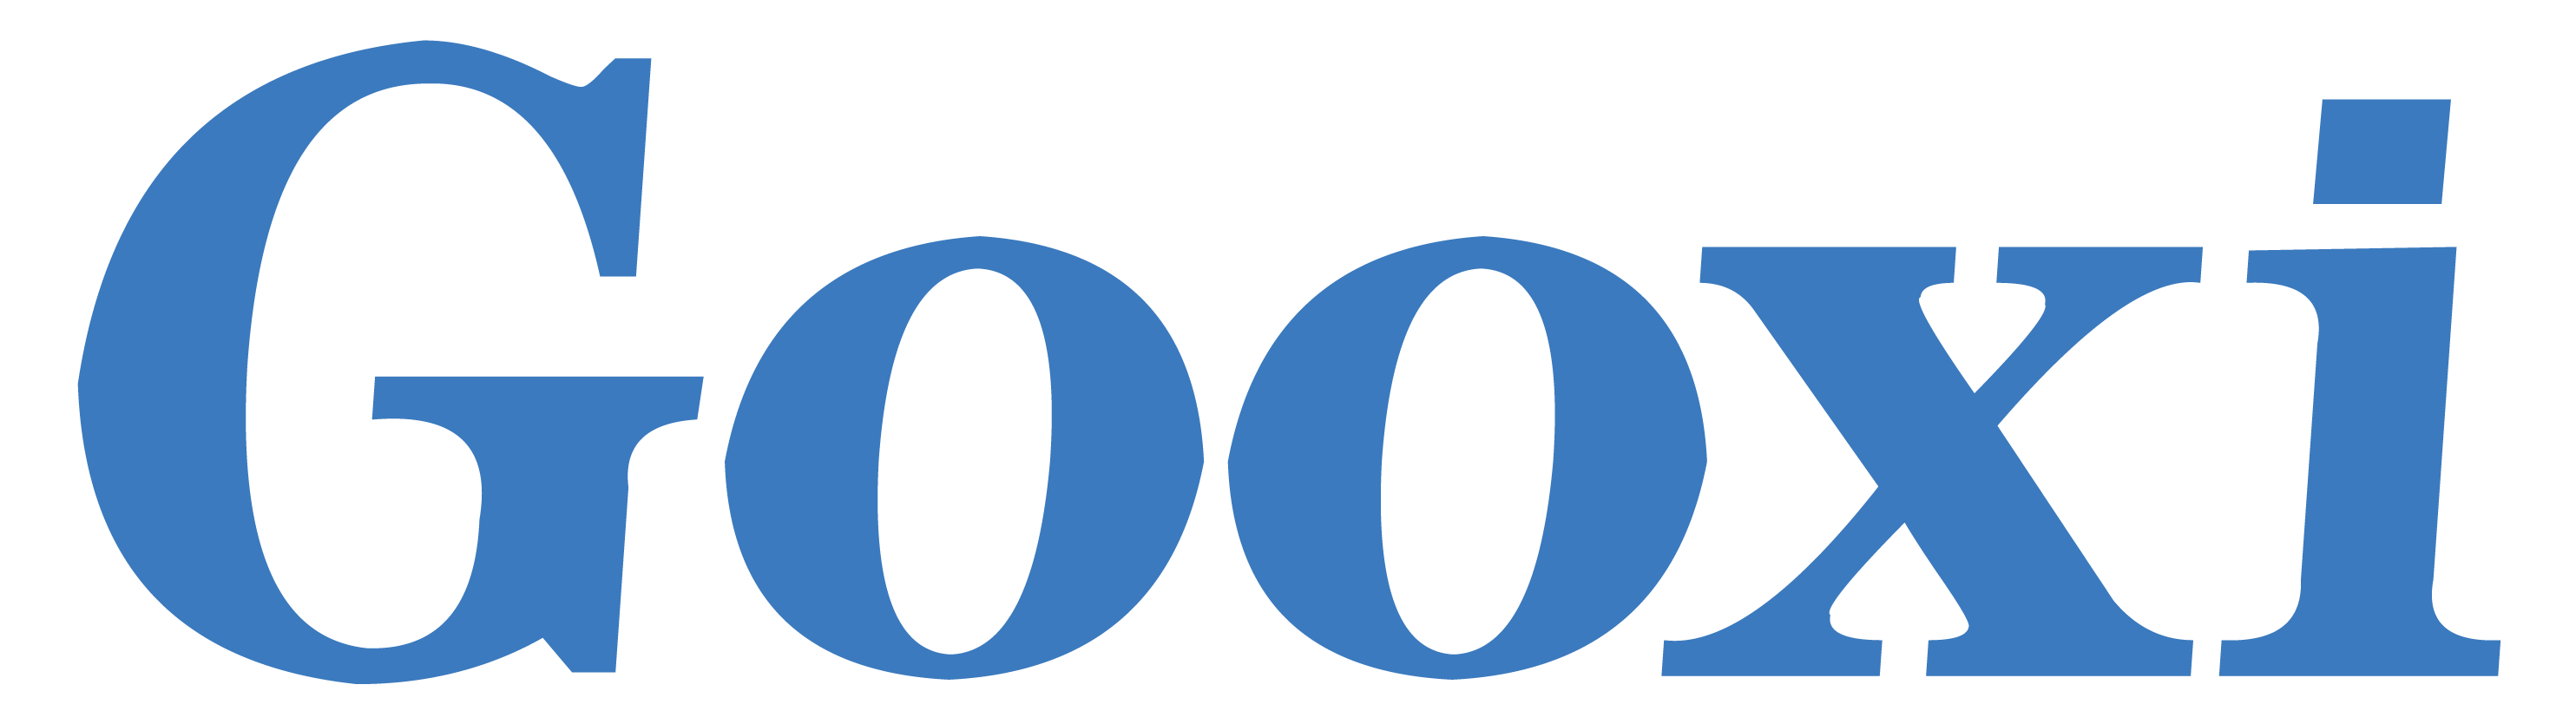 Gooxi_Logo